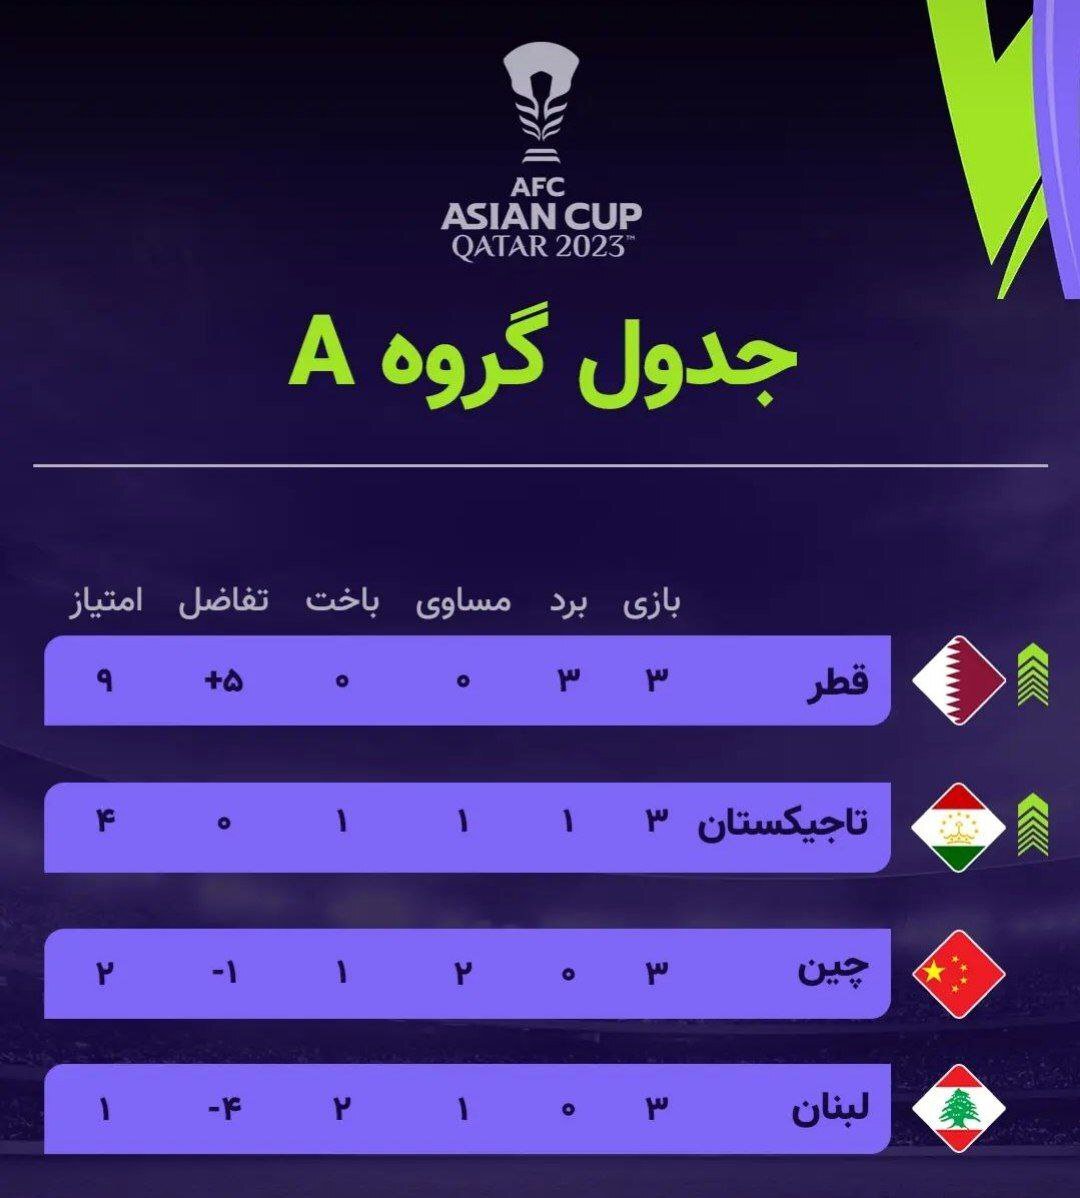  تاجیکستان 2- لبنان یک، قطر یک – چین 0/ صعود تاریخی تاجیکستان به مرحله یک هشتم نهایی